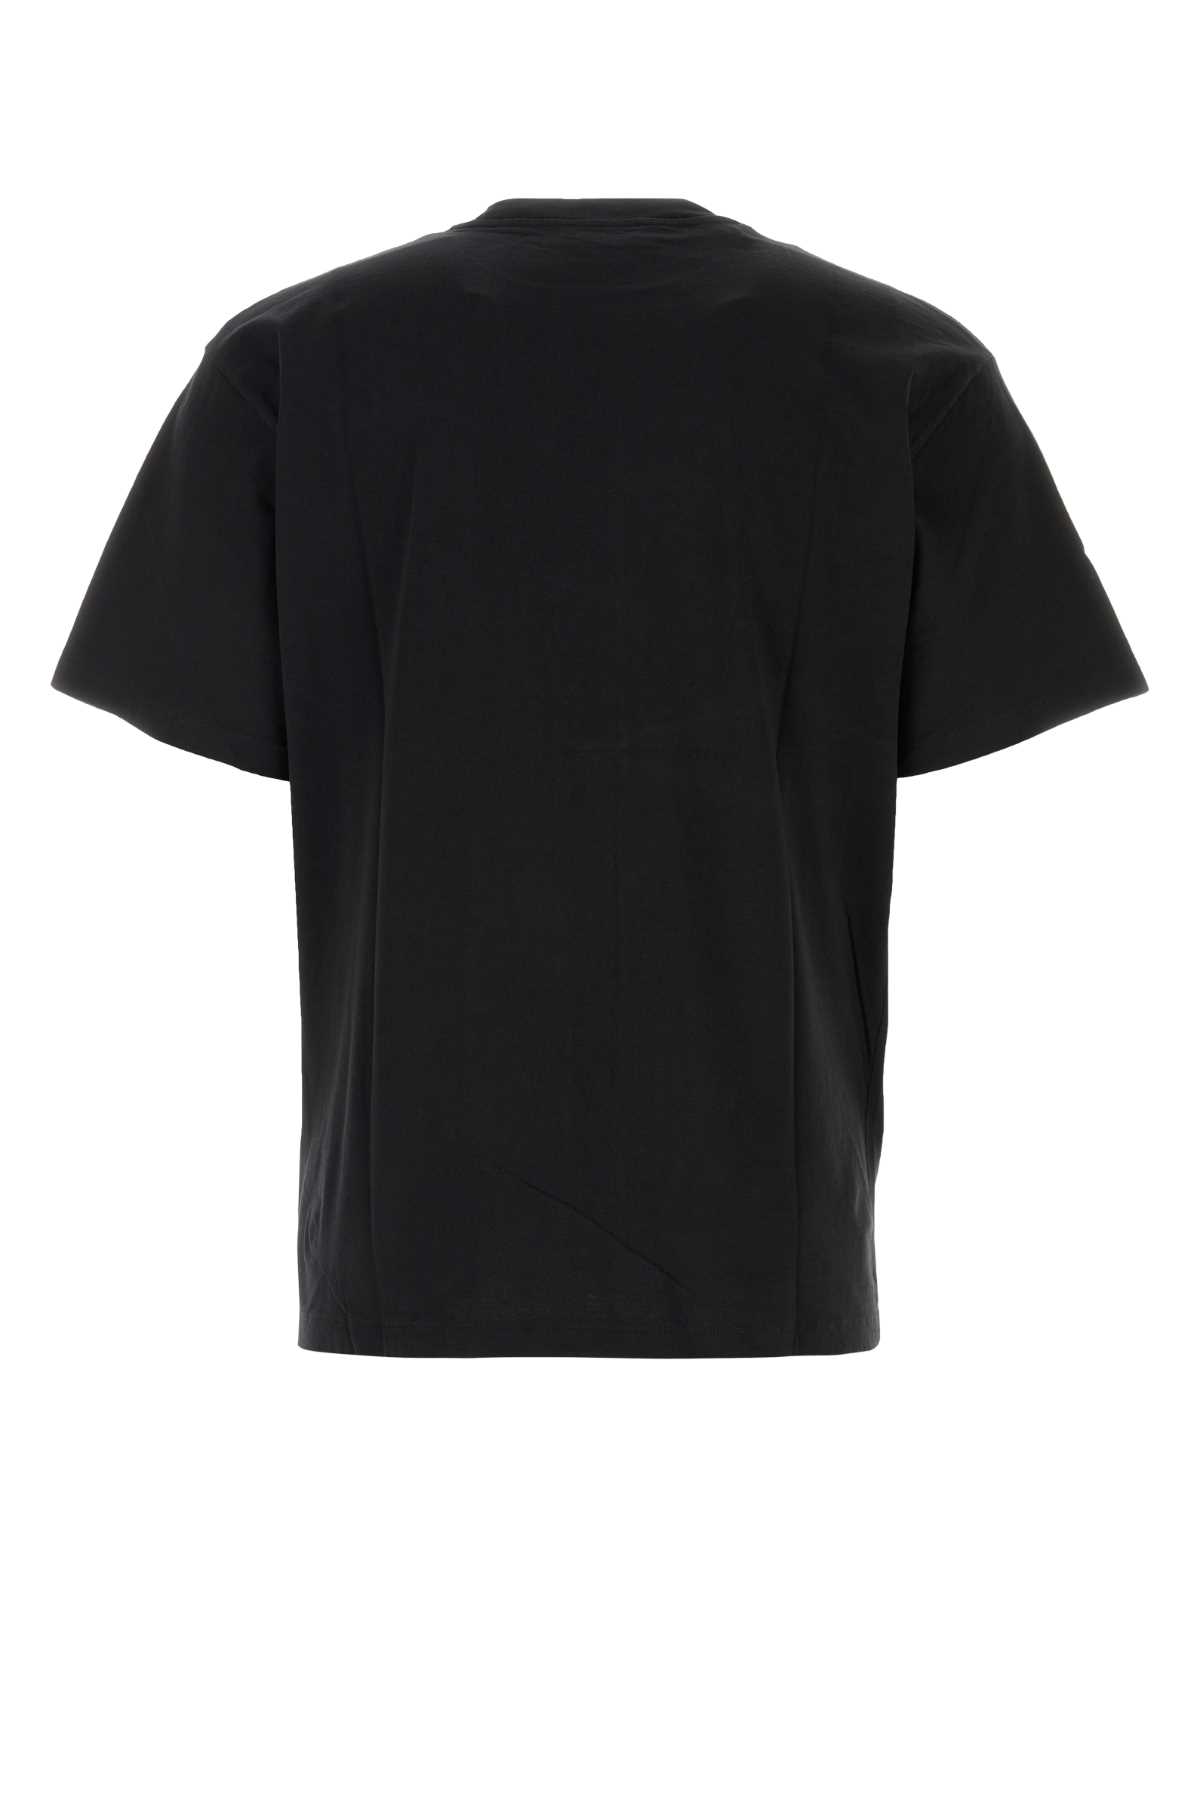 Shop Aries Black Cotton T-shirt